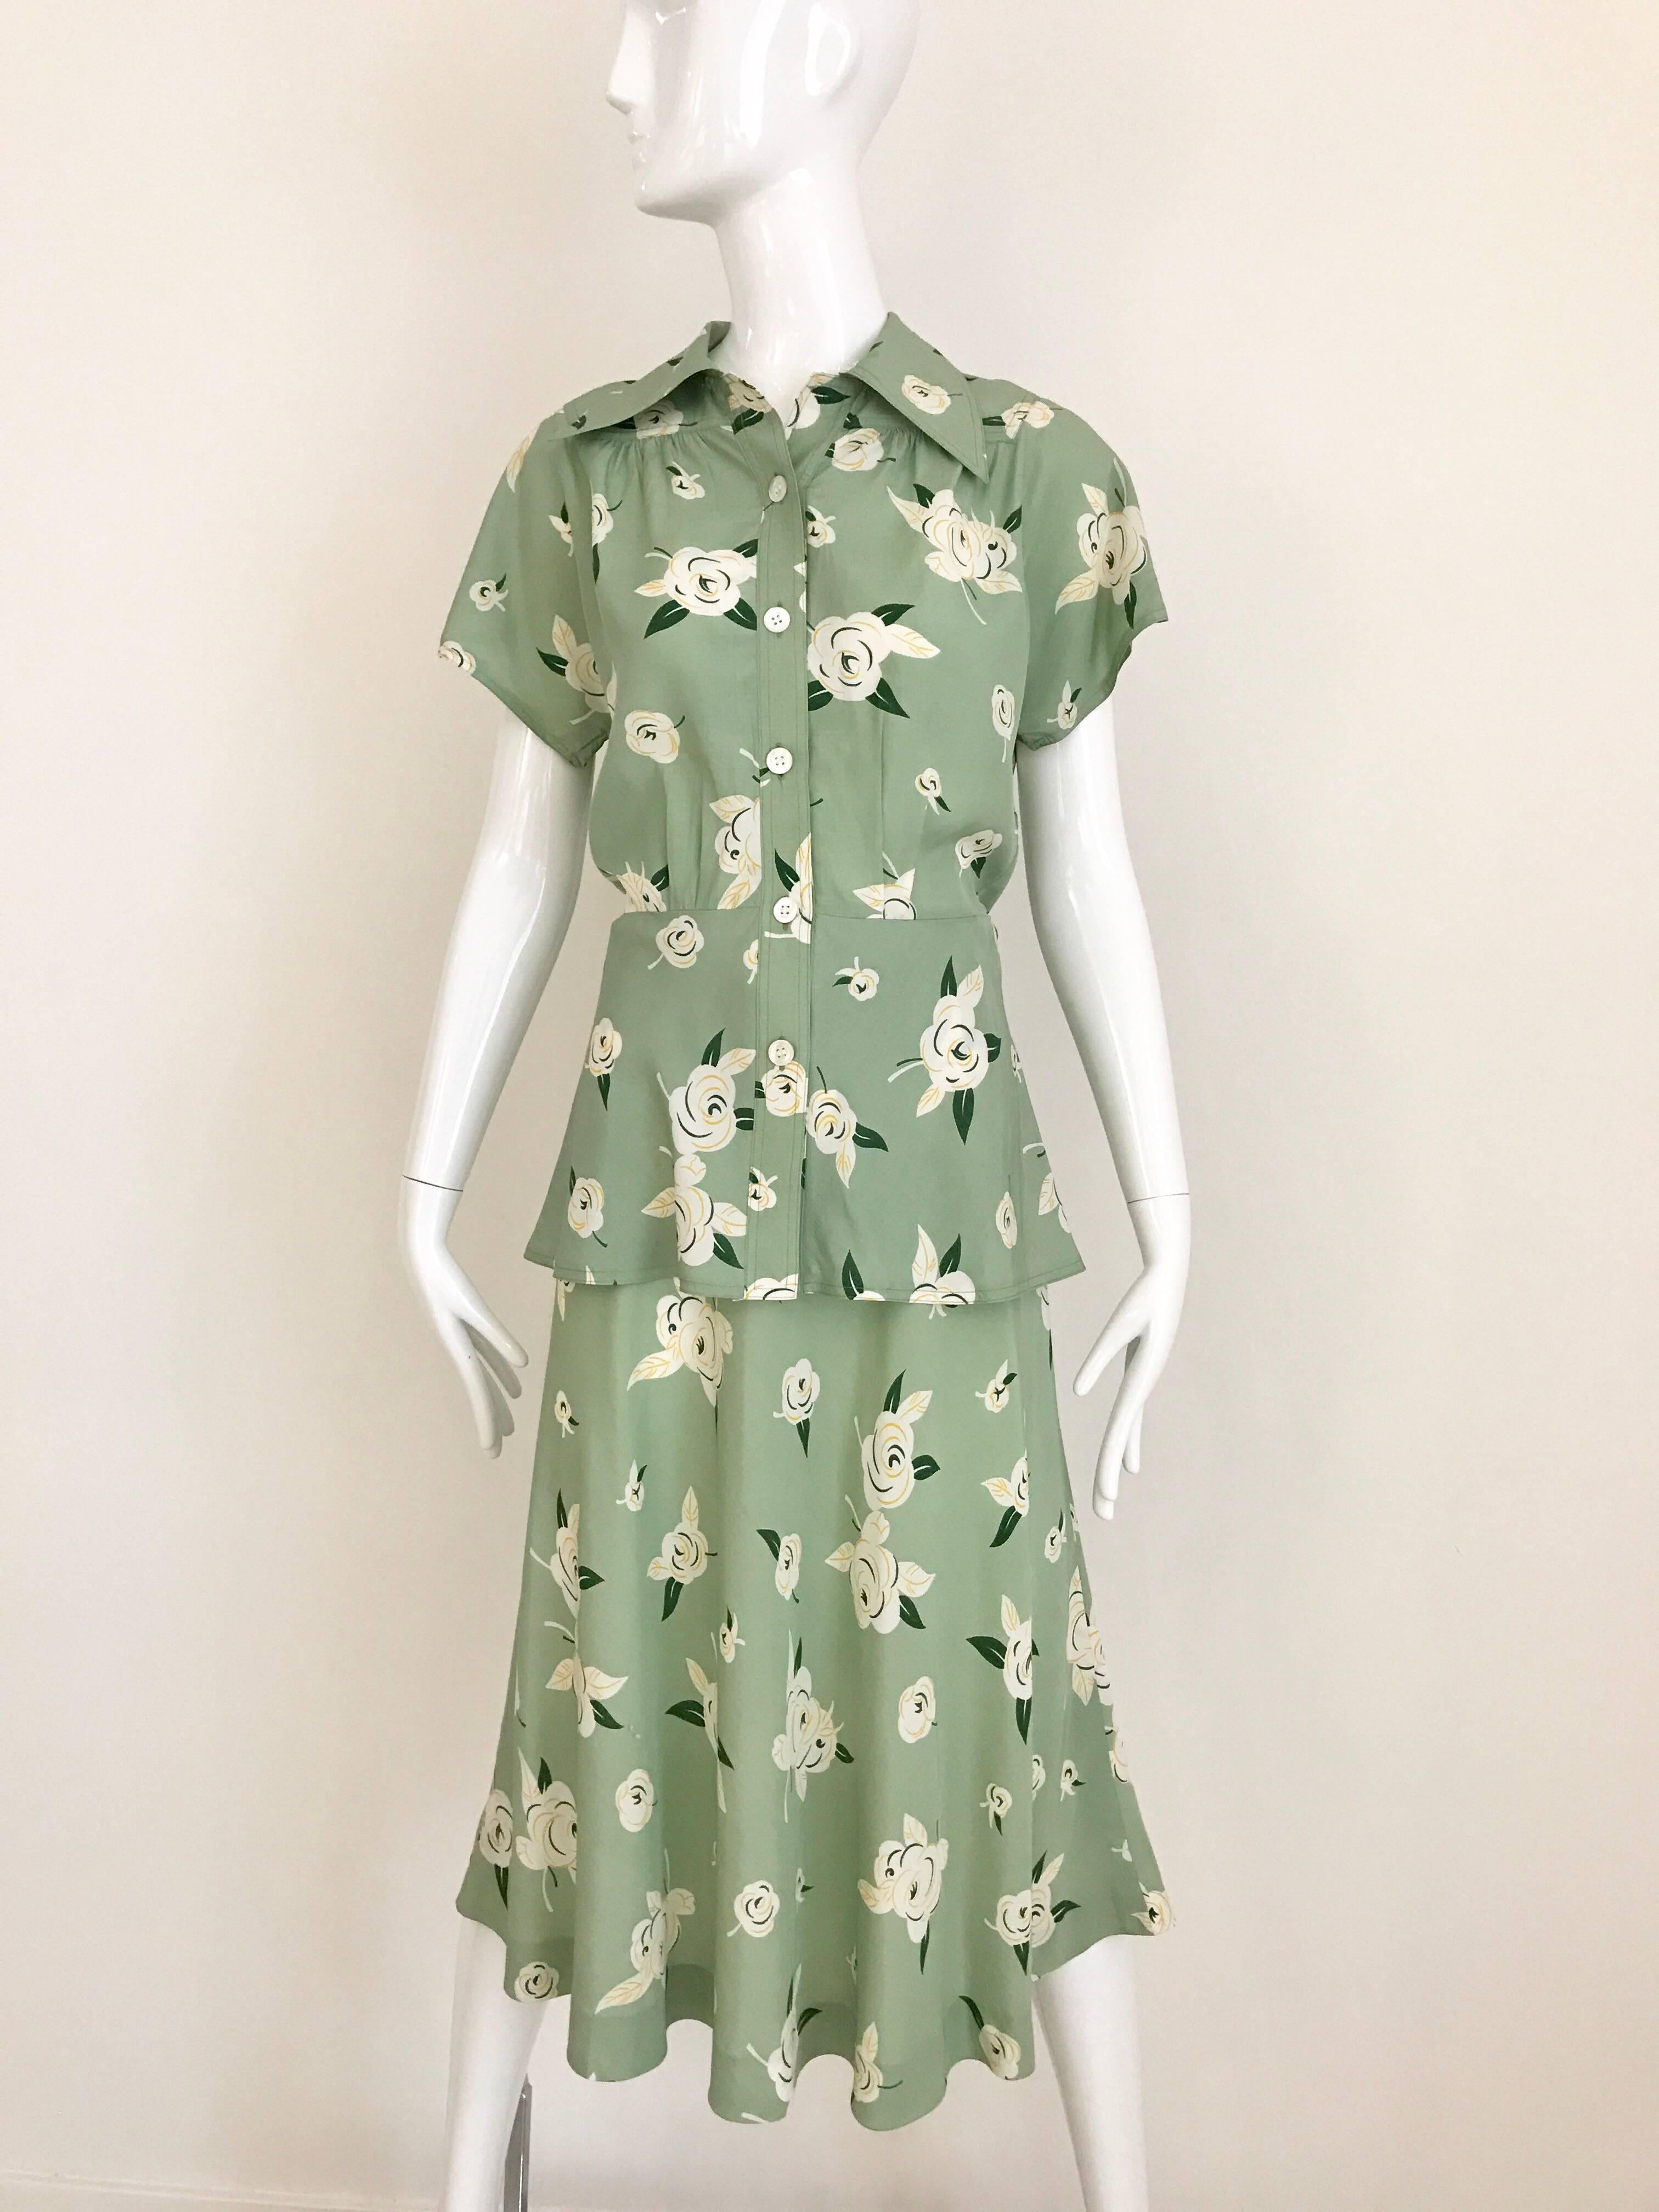 GUY LAROCHE 1970s Floral Print Light Green Rayon Blouse Skirt Ensemble  2